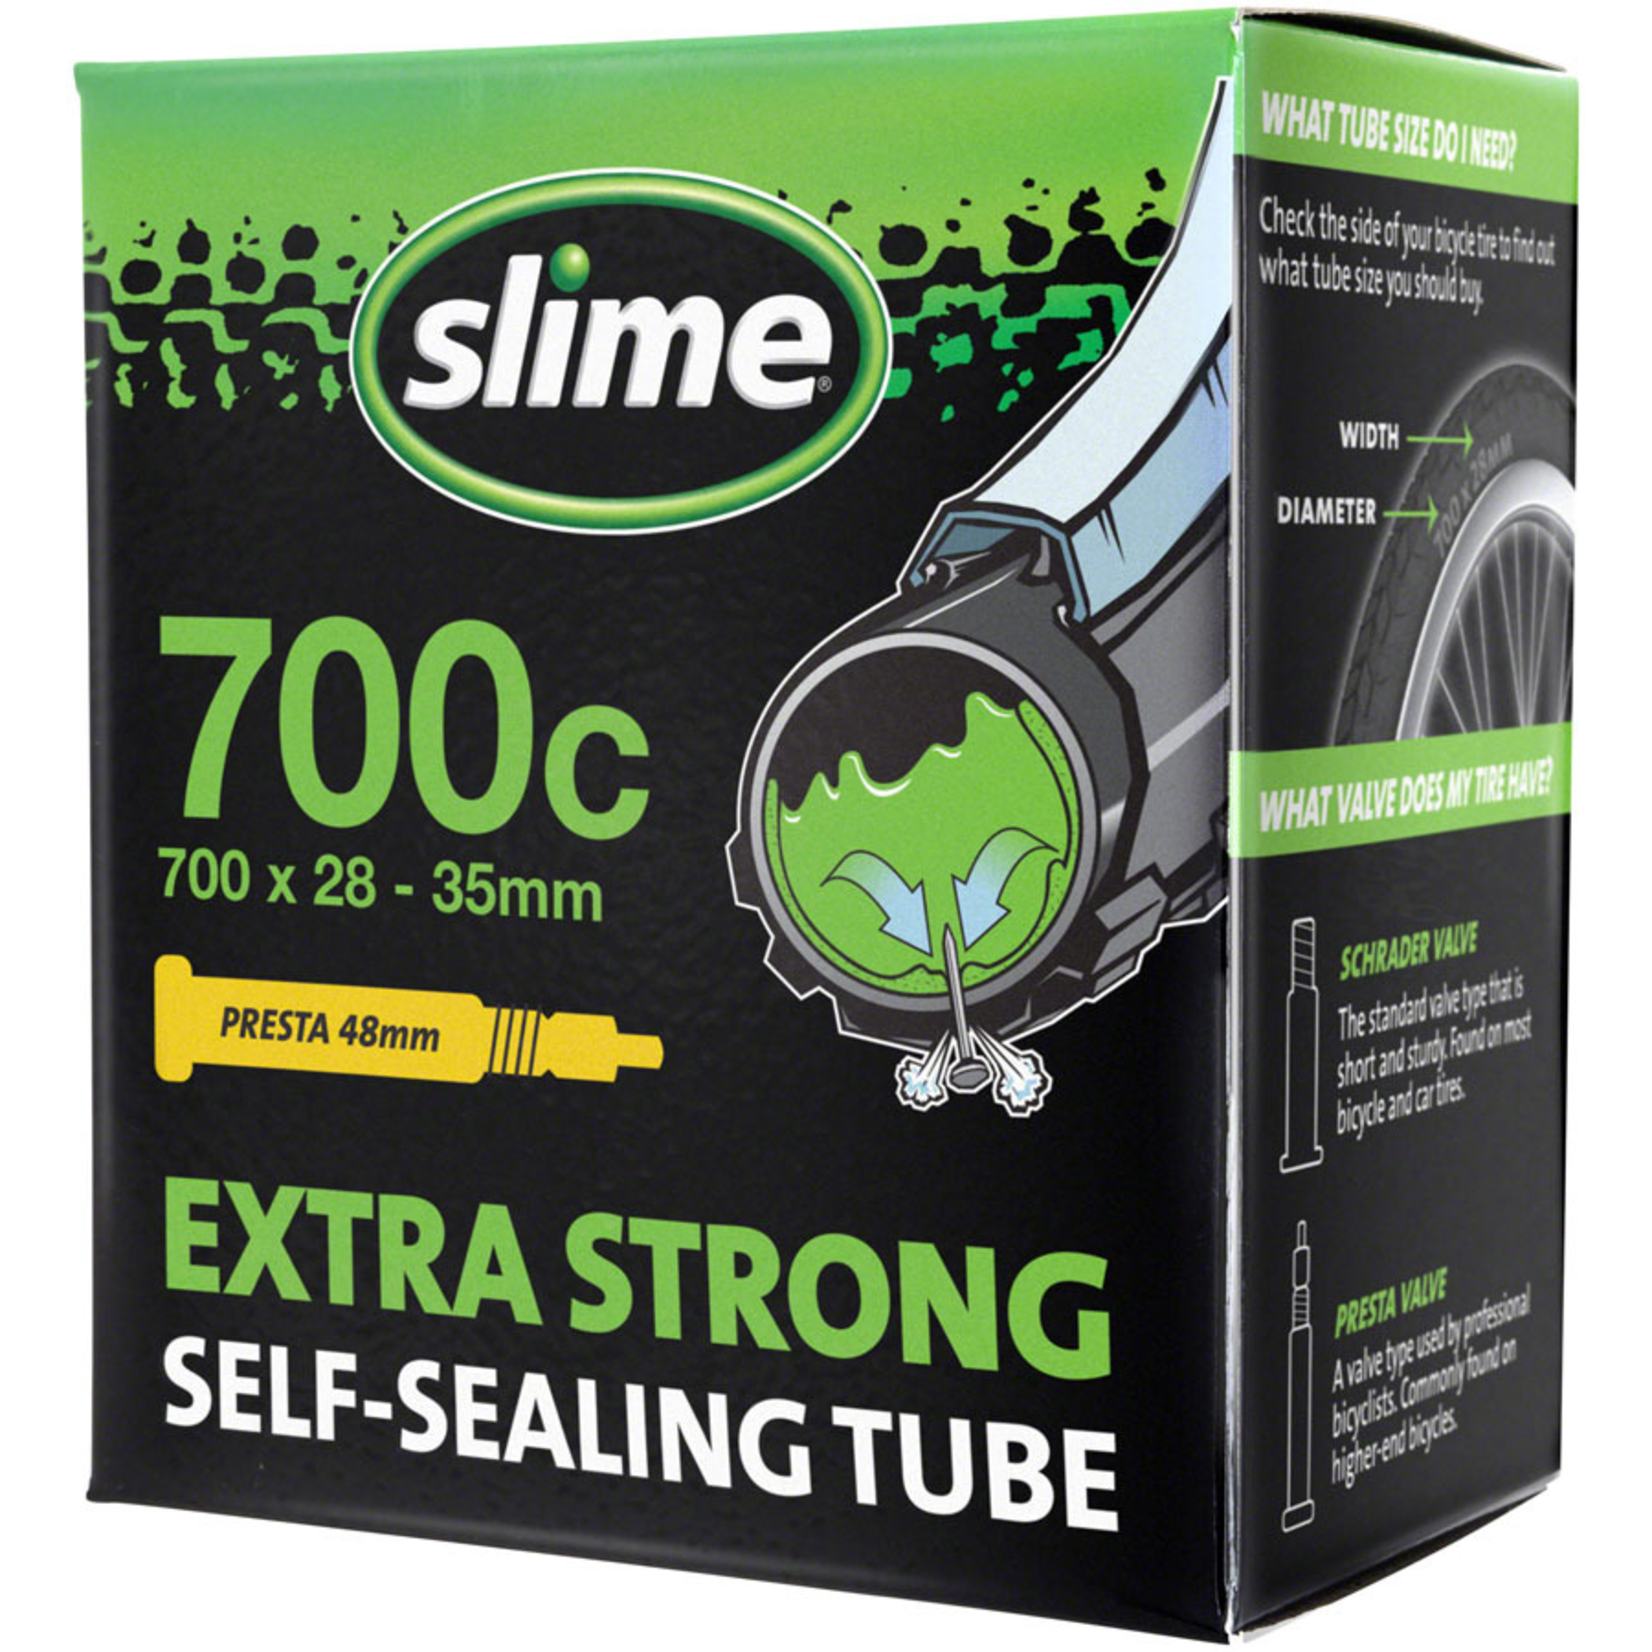 Slime Slime Self-Sealing Tube 700c x 28mm-35mm 48mm Presta Valve